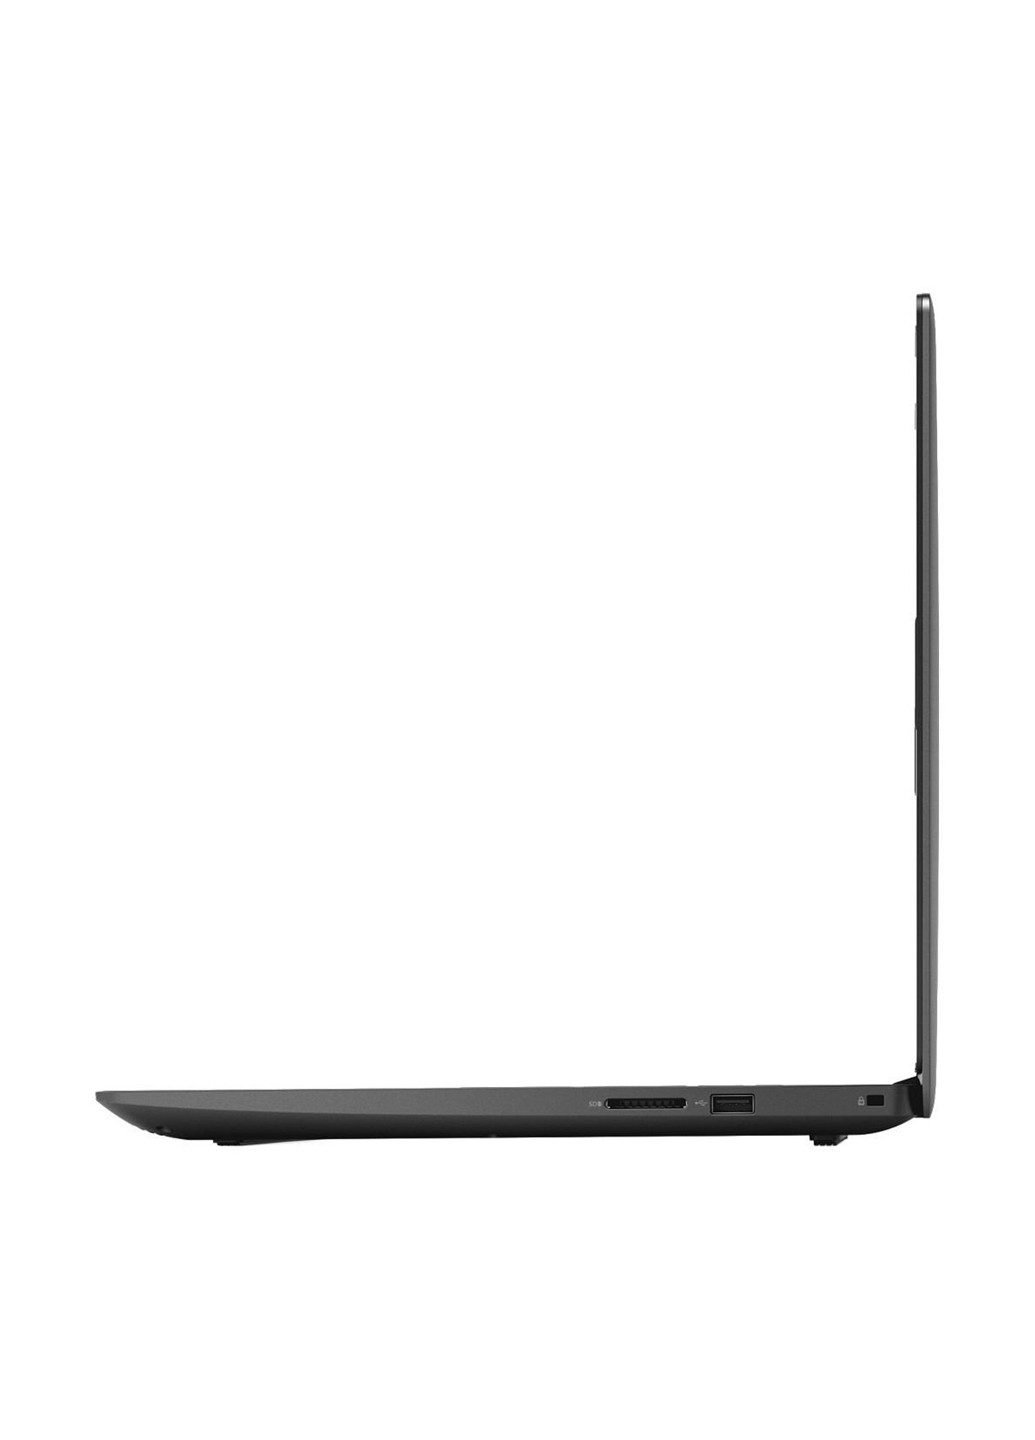 Ноутбук Dell inspiron g3 15 3579 (35g3i716s3g15i-wbk) black (137041877)